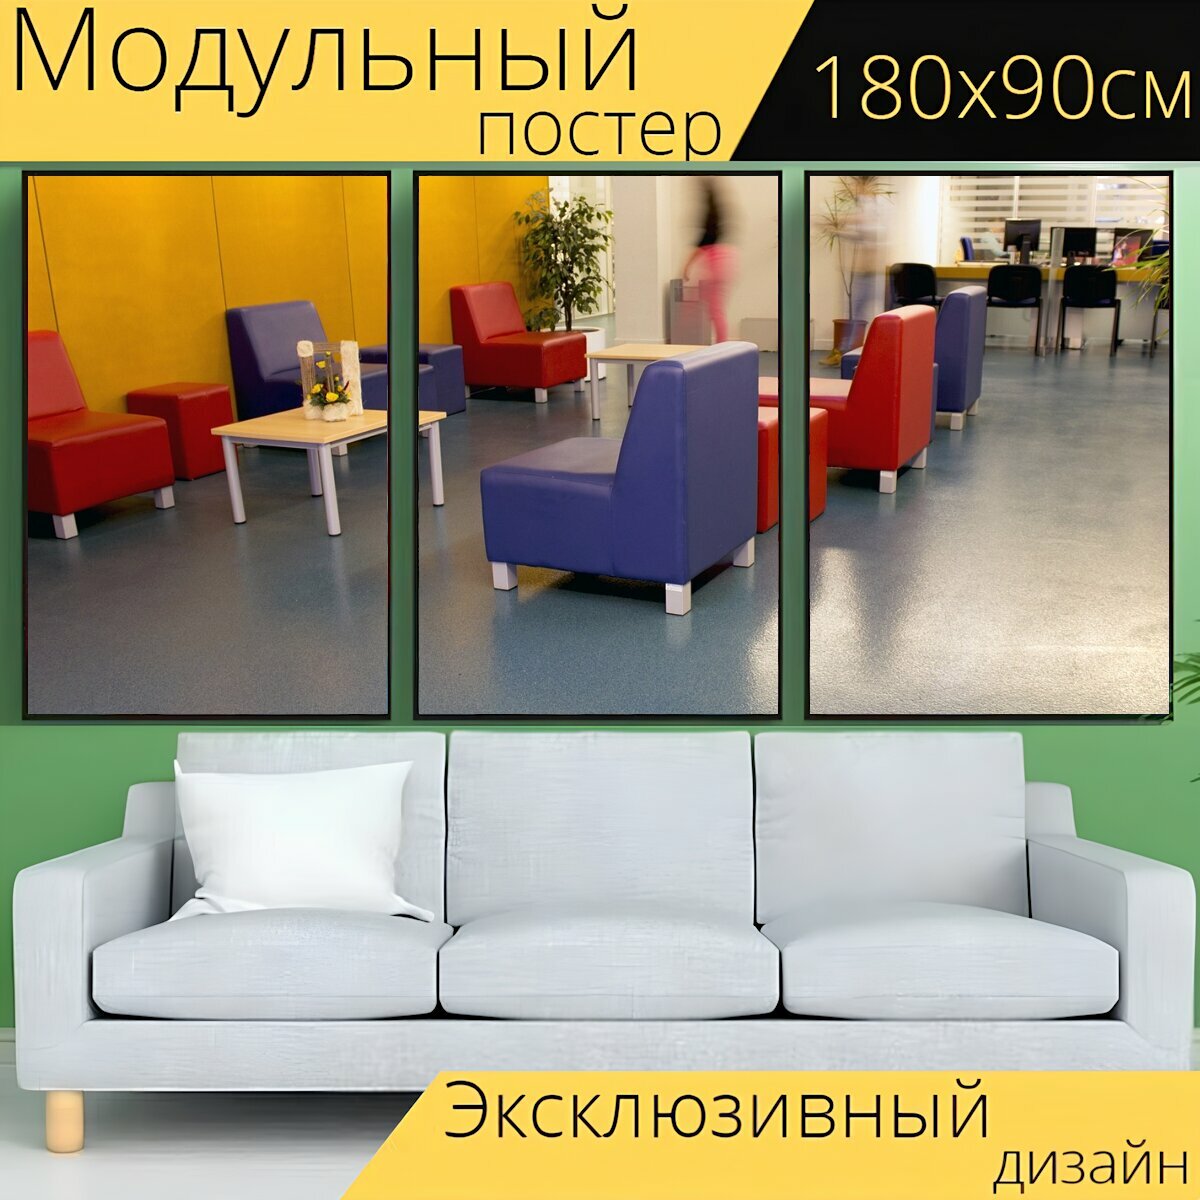 Модульный постер "Бухгалтерский учет, стулья, офис" 180 x 90 см. для интерьера